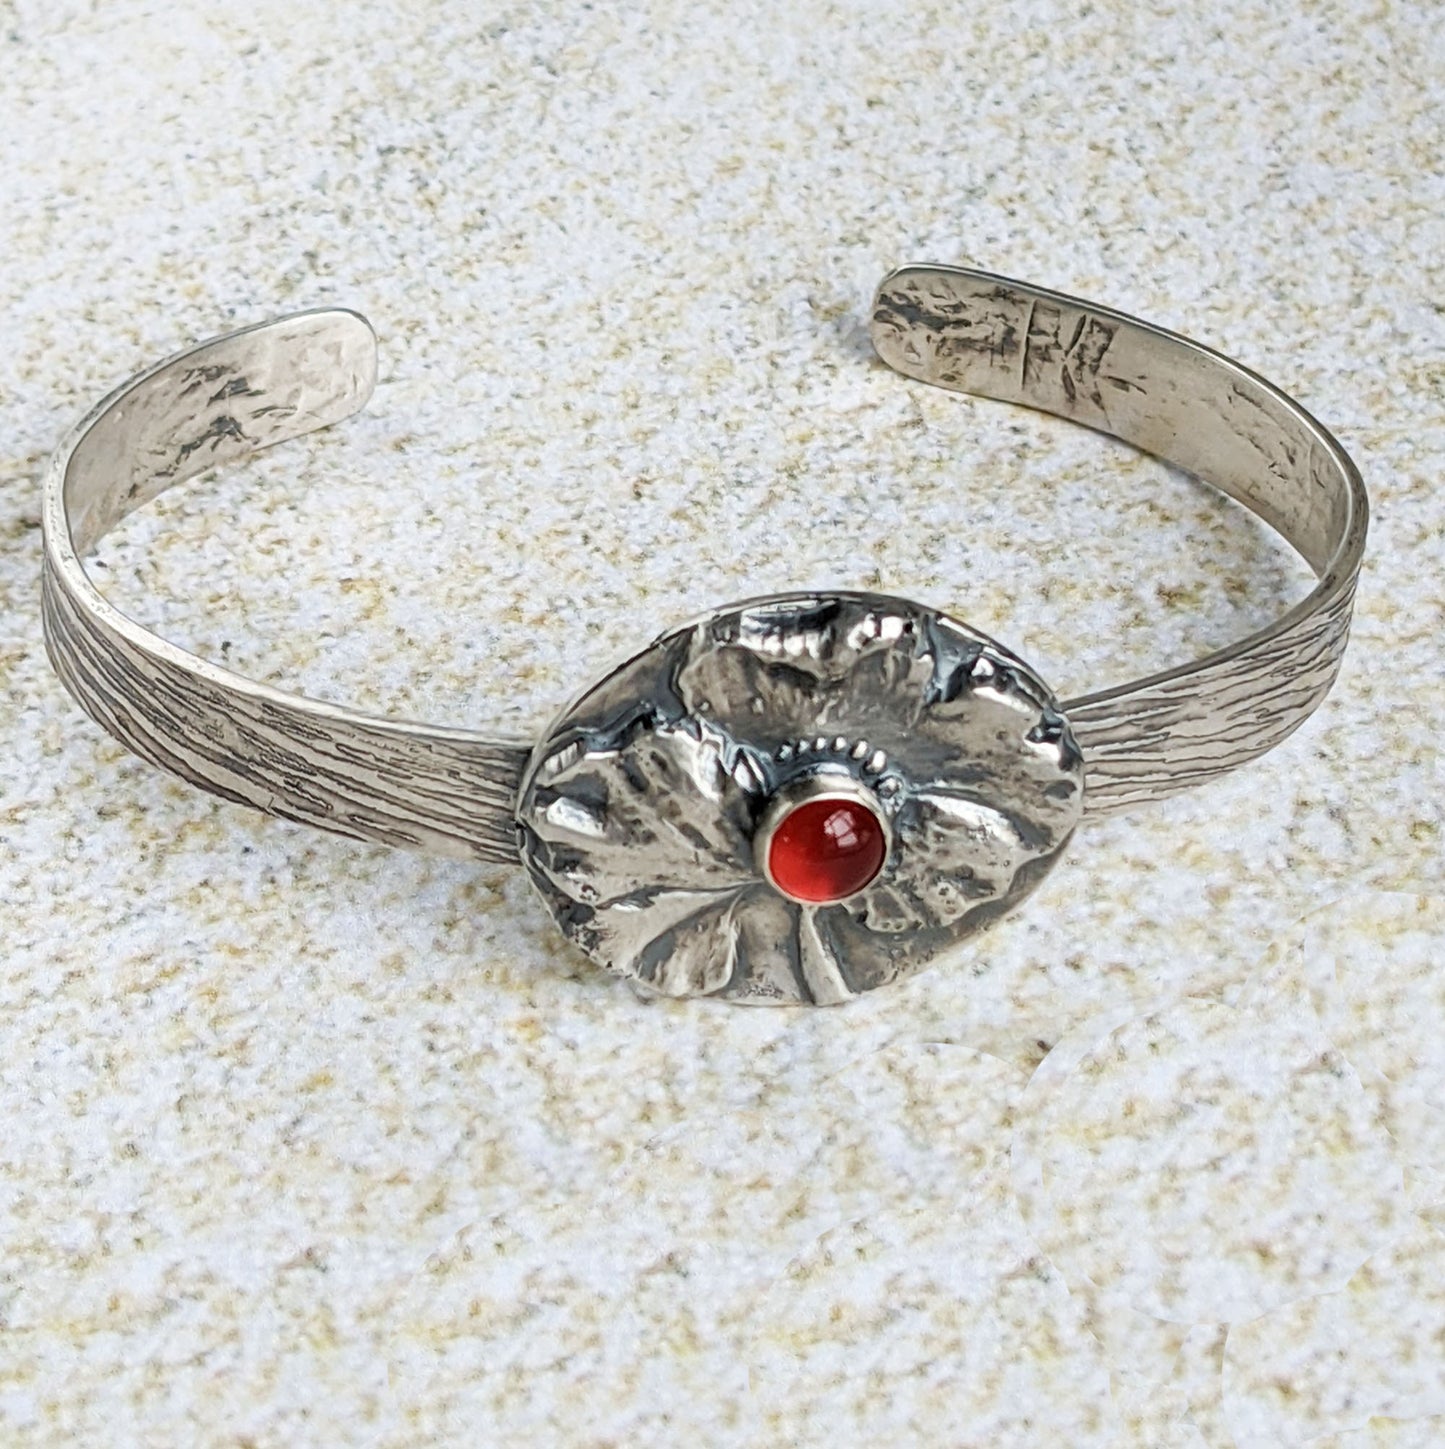 Poppy Flower and Carnelian Sterling Silver Cuff Bracelet